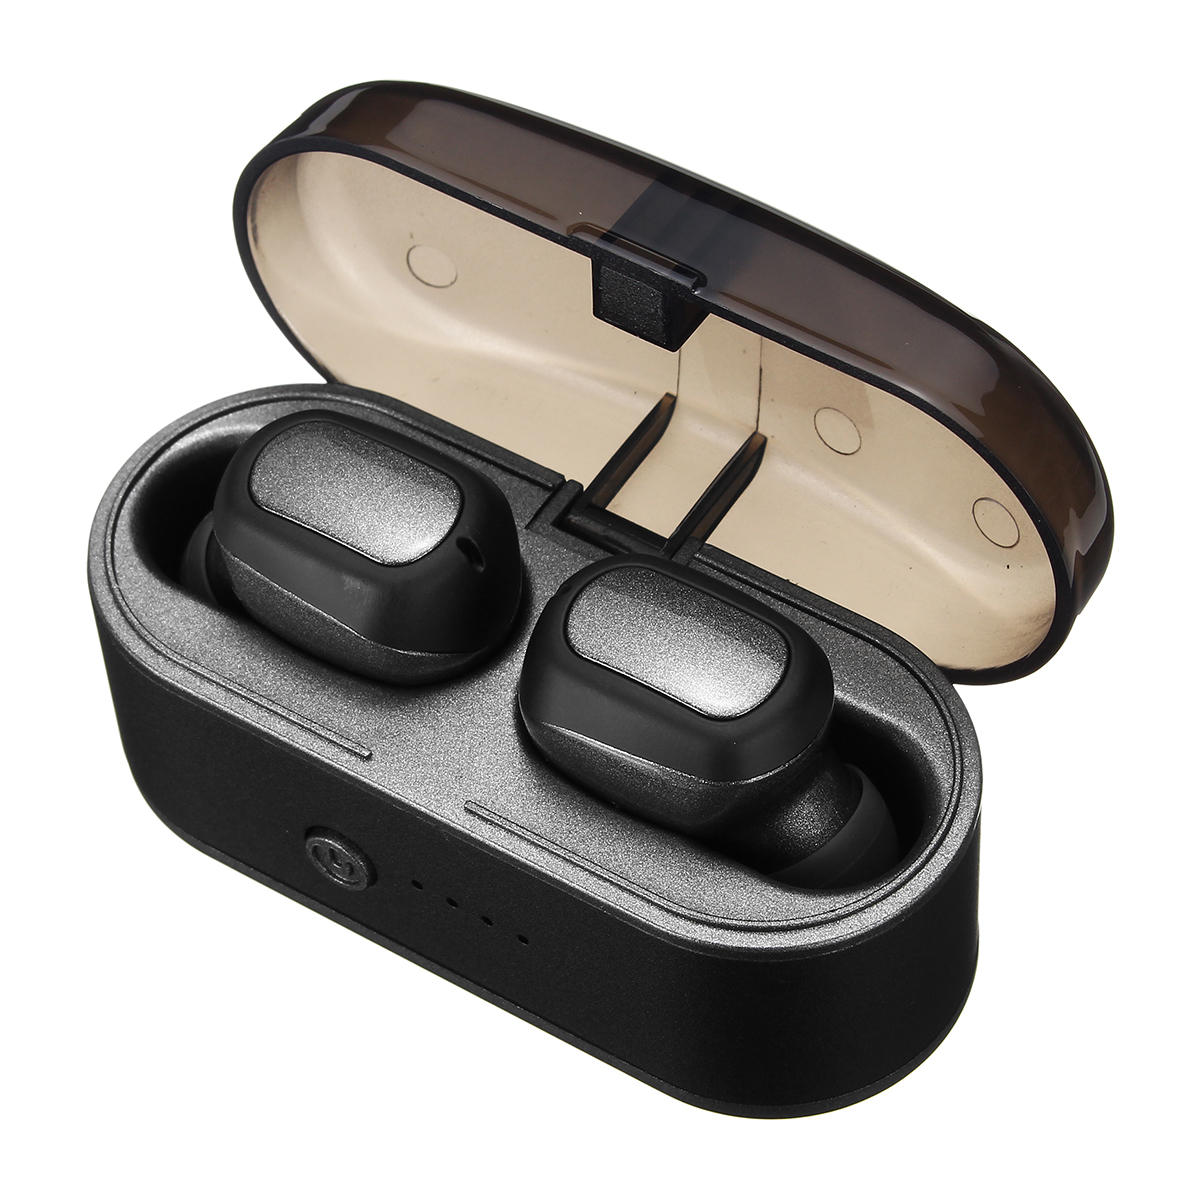 [bluetooth 5.0] TWS Mini Wireless Earbuds Earphone CVC 8.0 Noise Cancelling Bass Stereo IPX5 Waterpr